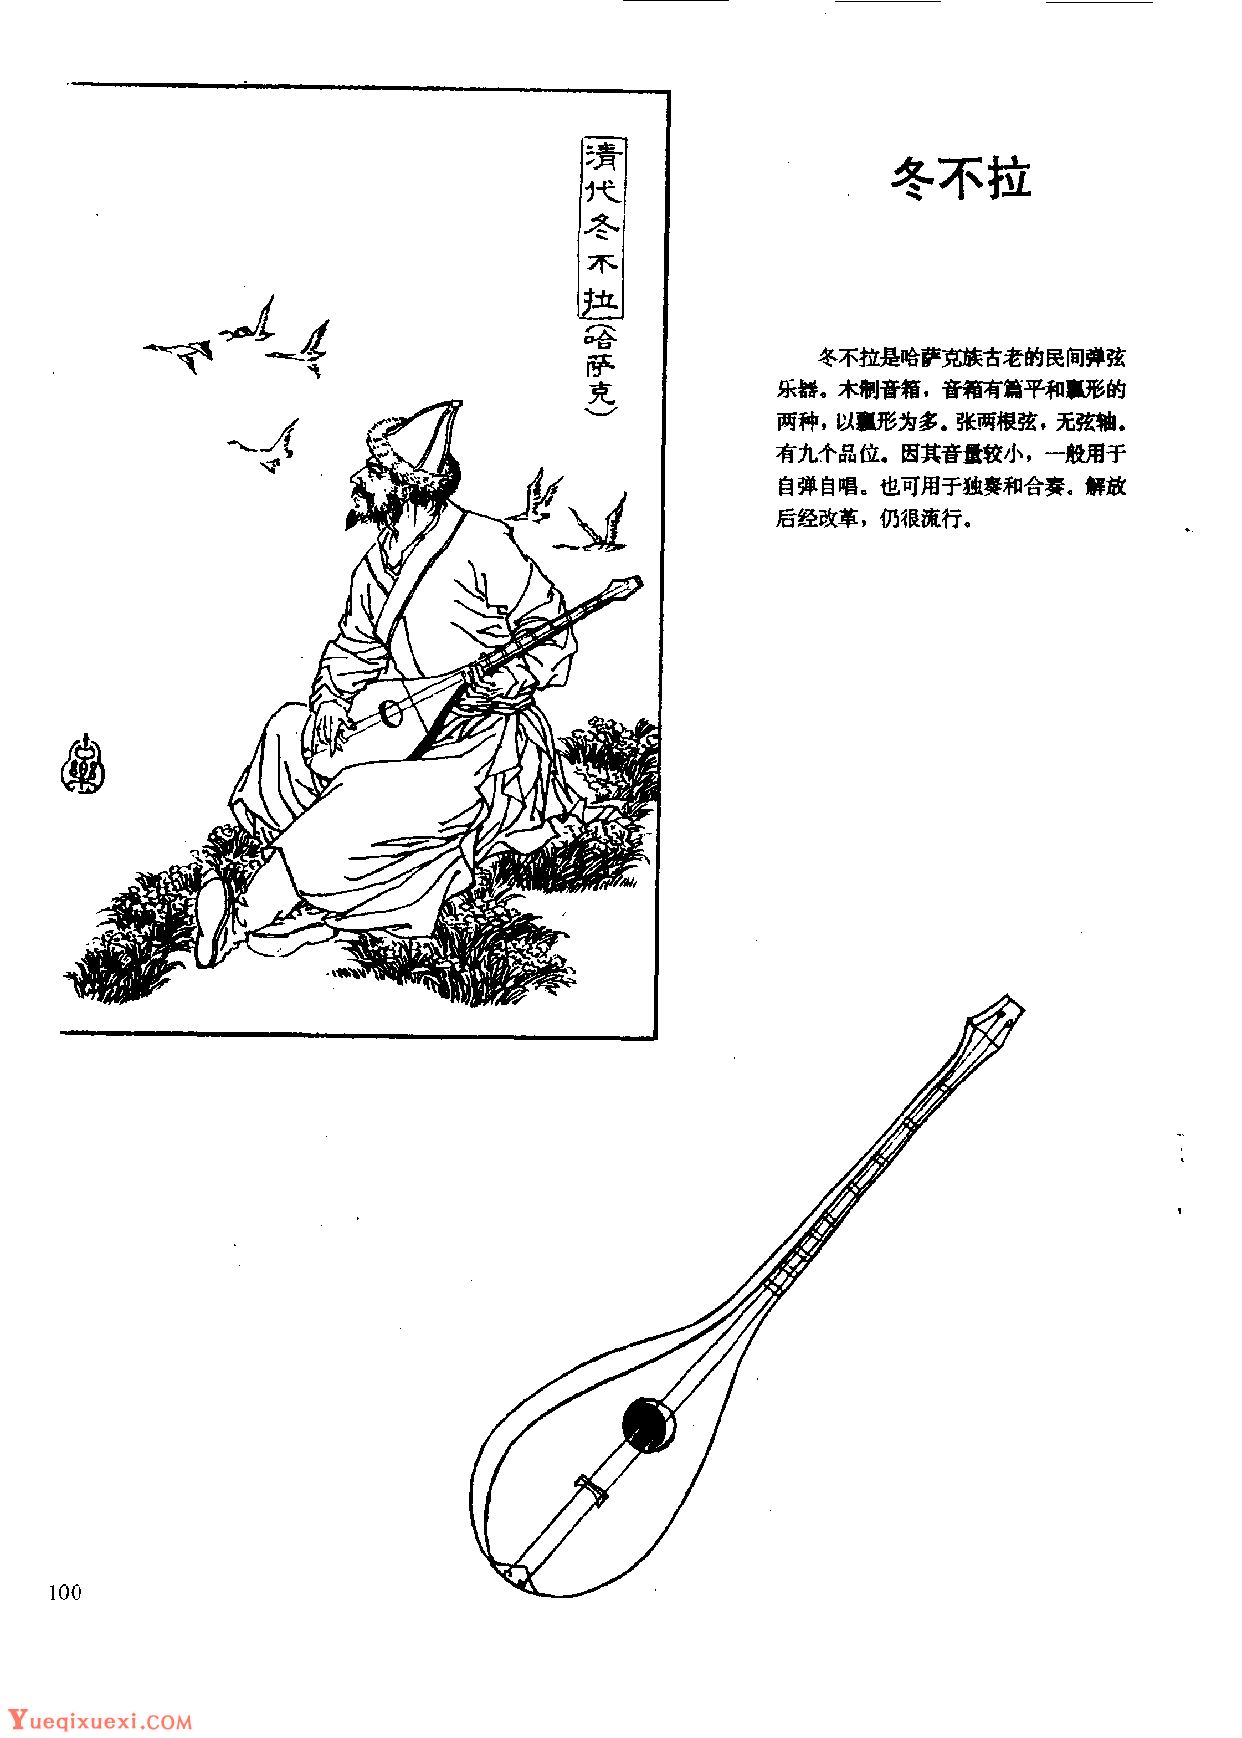 中国古代乐器《冬不拉》